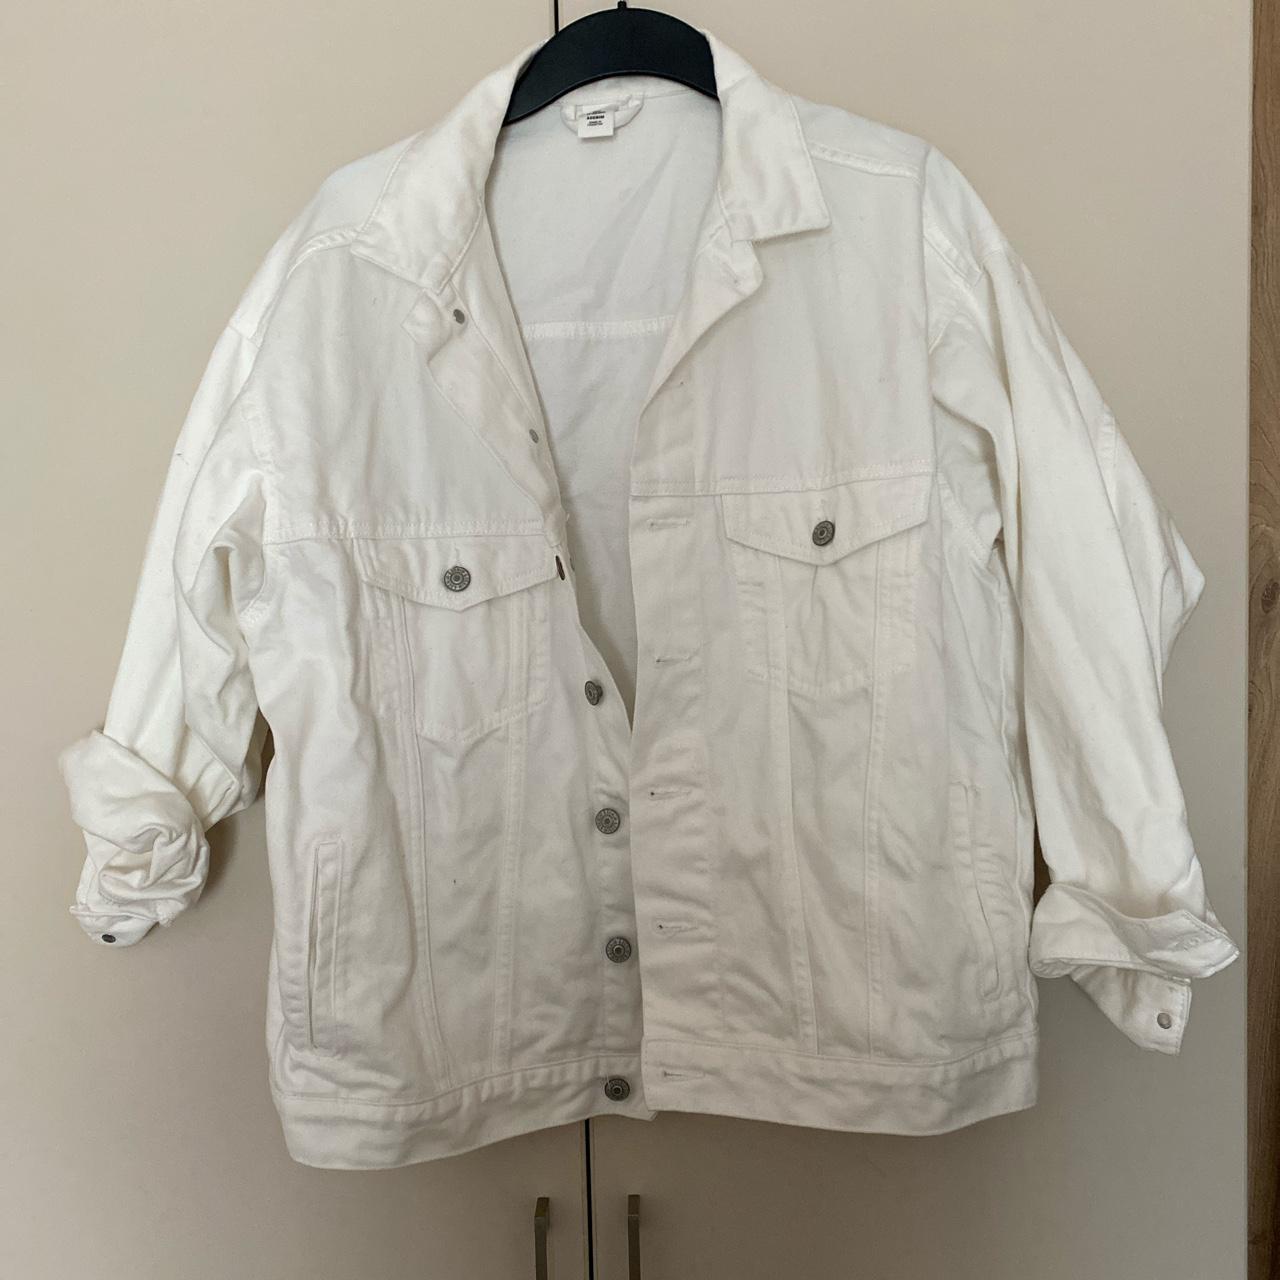 White H&M denim jacket Worn, good condition. I’m a... - Depop